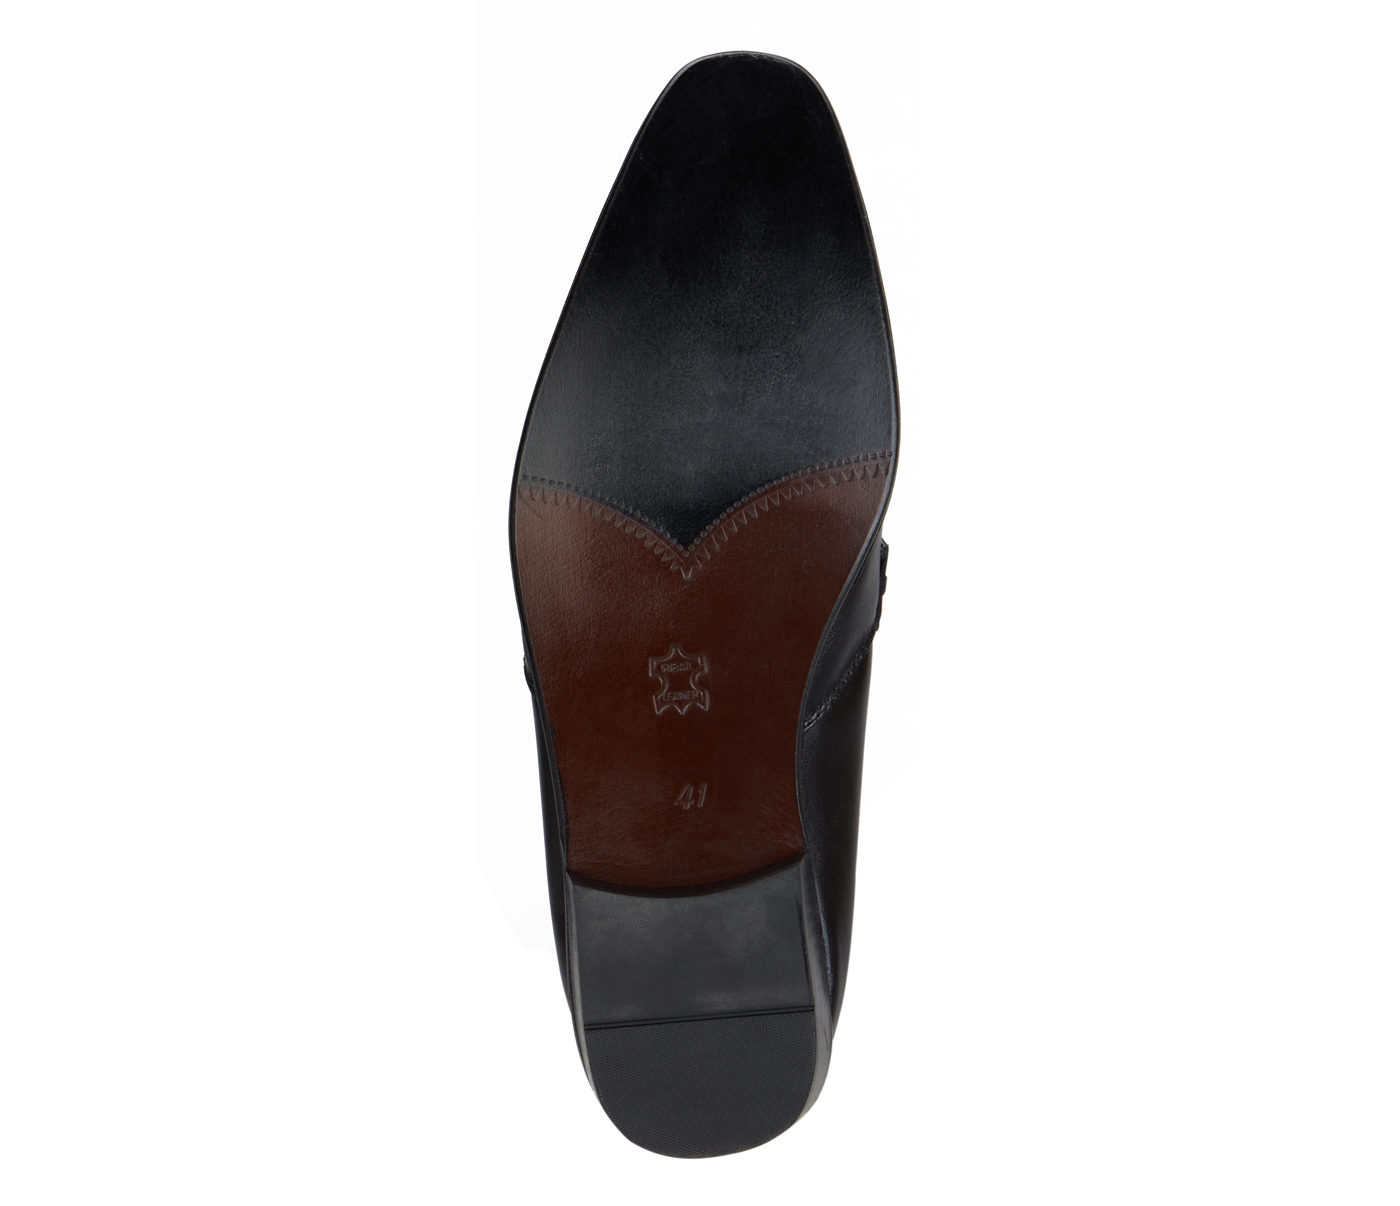 Footwear-Adamis Pure Leather Footwear For Men- - Black